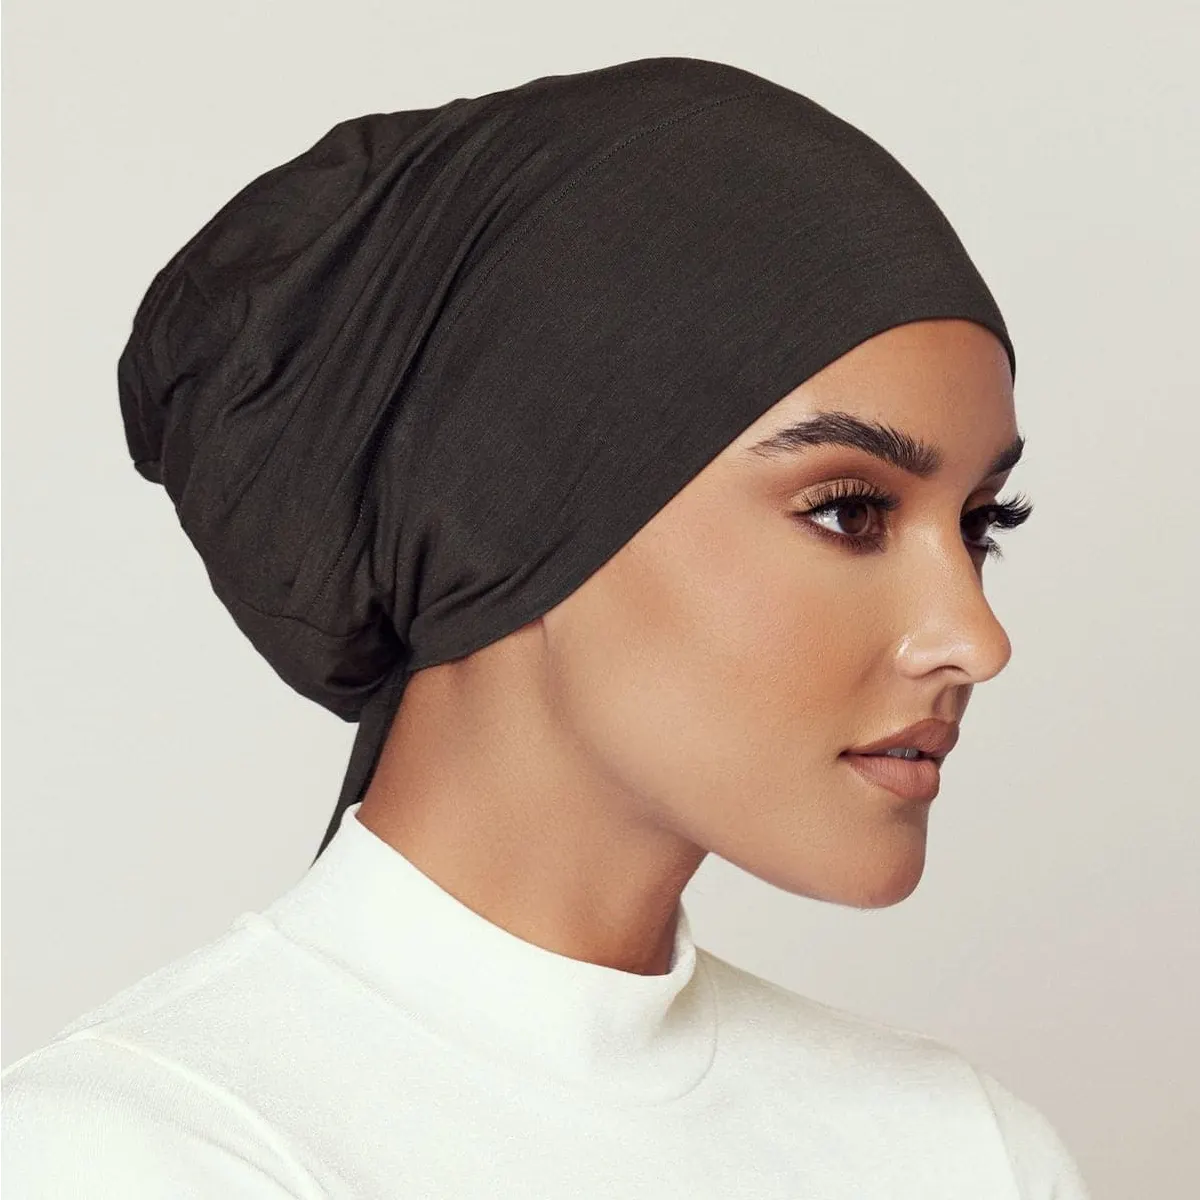 Gorro Hijab interior de algodón de Jersey de bambú de primera calidad, gorro ecológico transpirable reciclado para mujeres musulmanas, gorros con pañuelo en la espalda